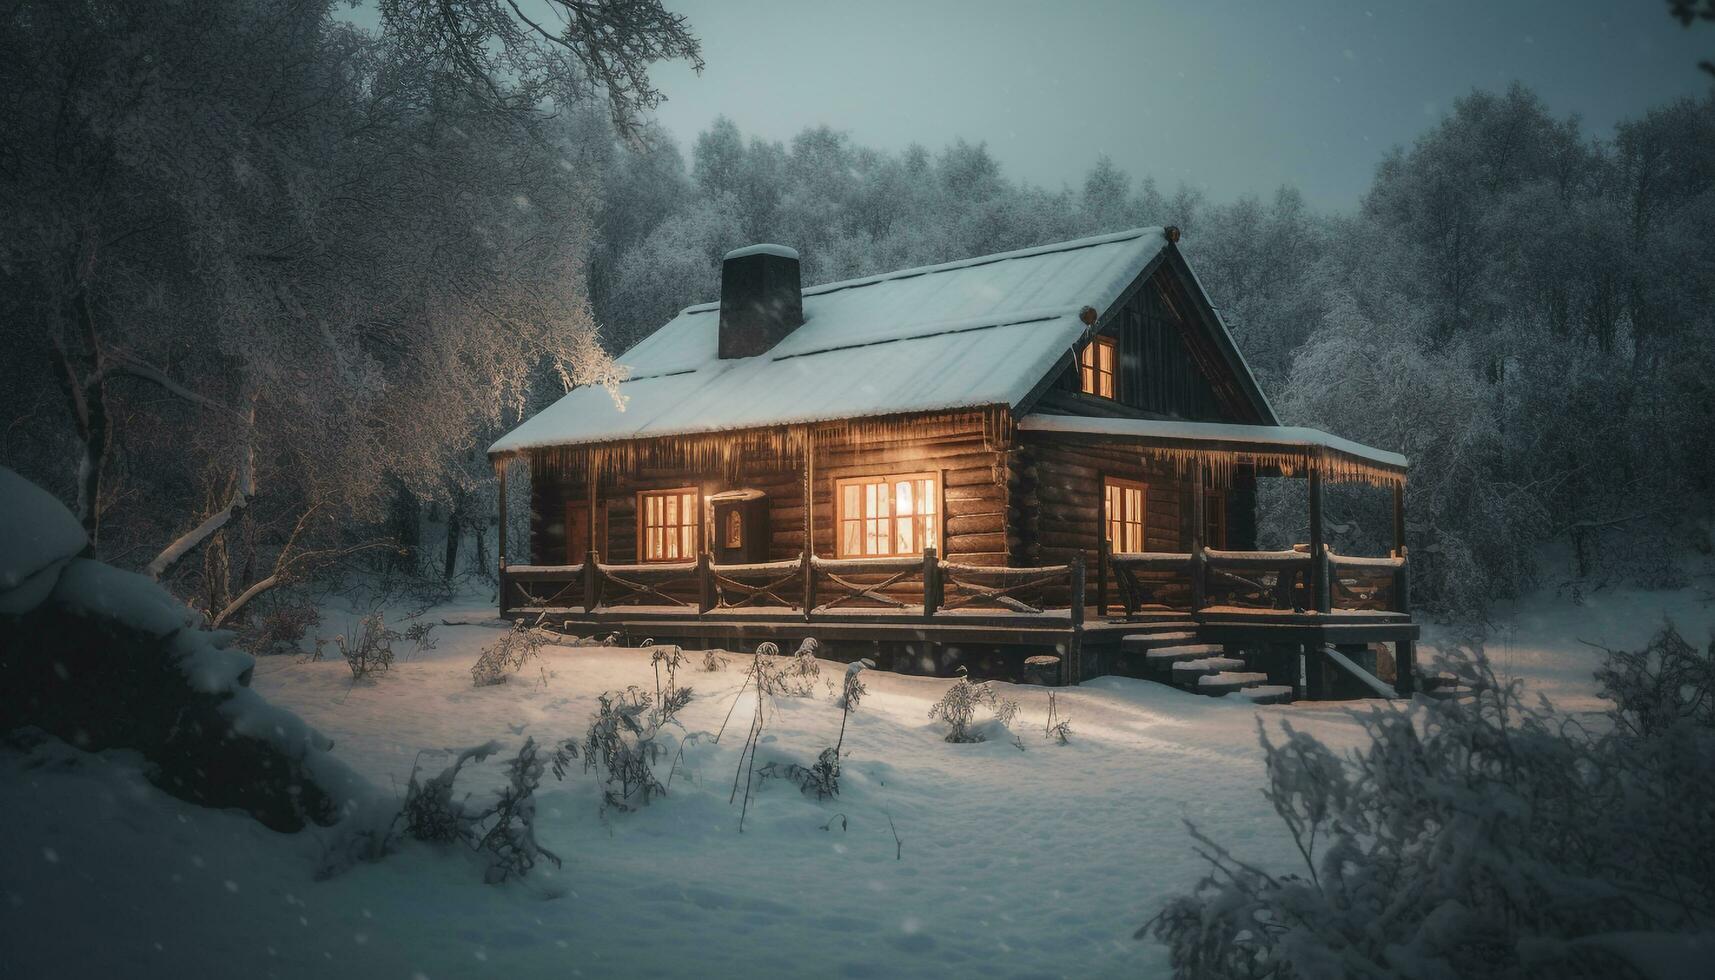 gelido inverno notte, nevicando su abbandonato capanna generativo ai foto